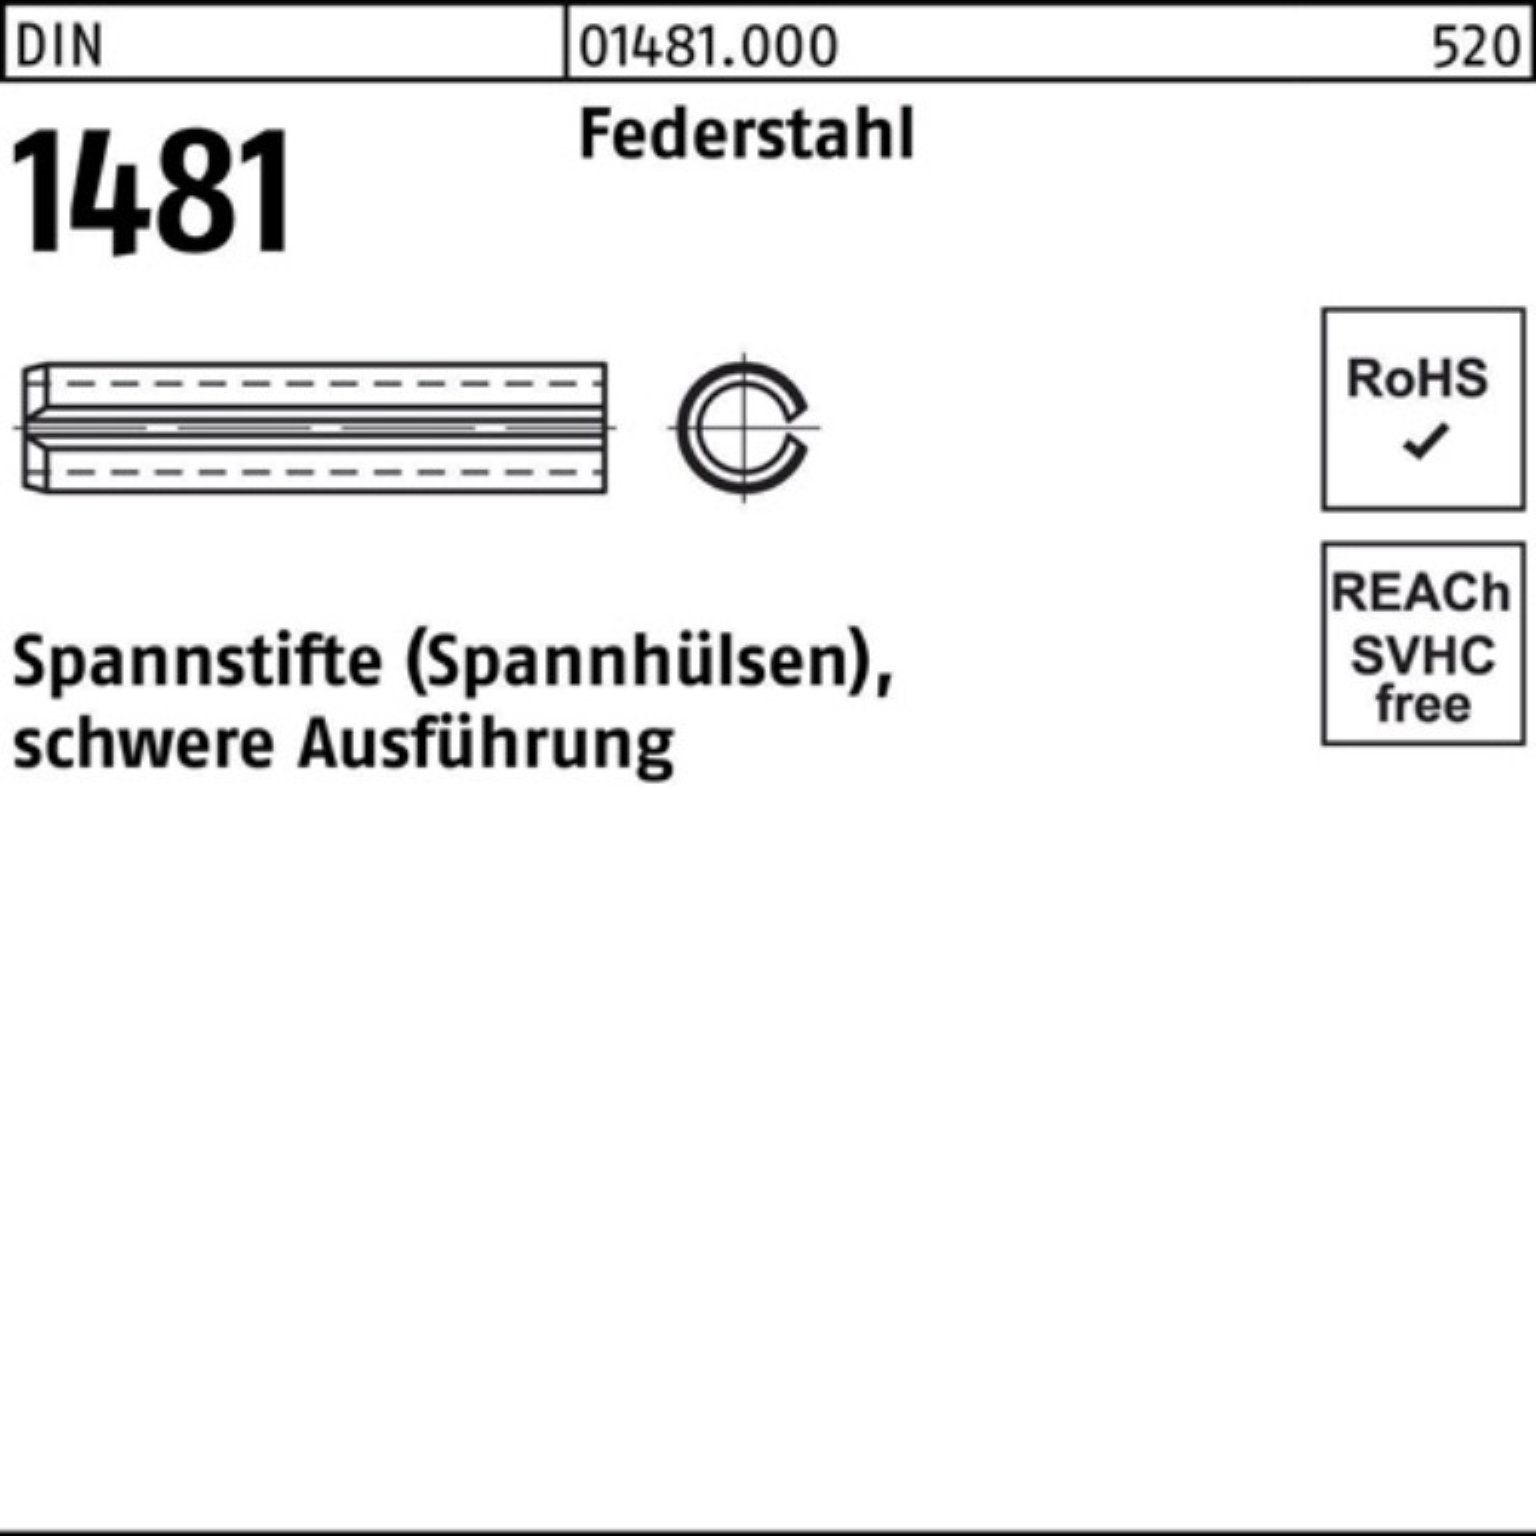 Reyher Spannstift 100er Pack Spannstift DIN 1481 10x 20 Federstahl schwere Ausführung 1